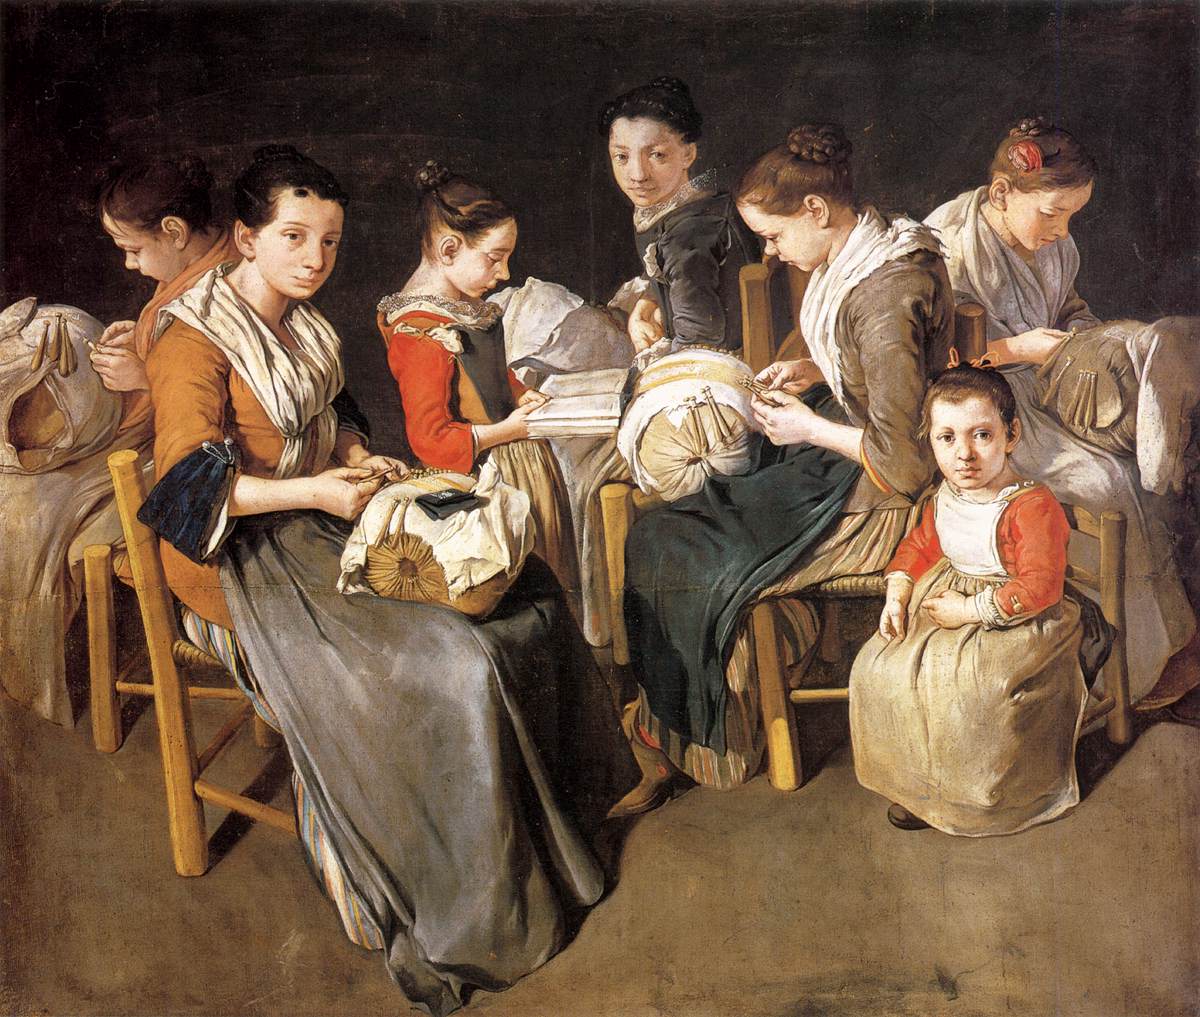 Kobiety pracujące nad koronką poduszki (szkoła szycia)